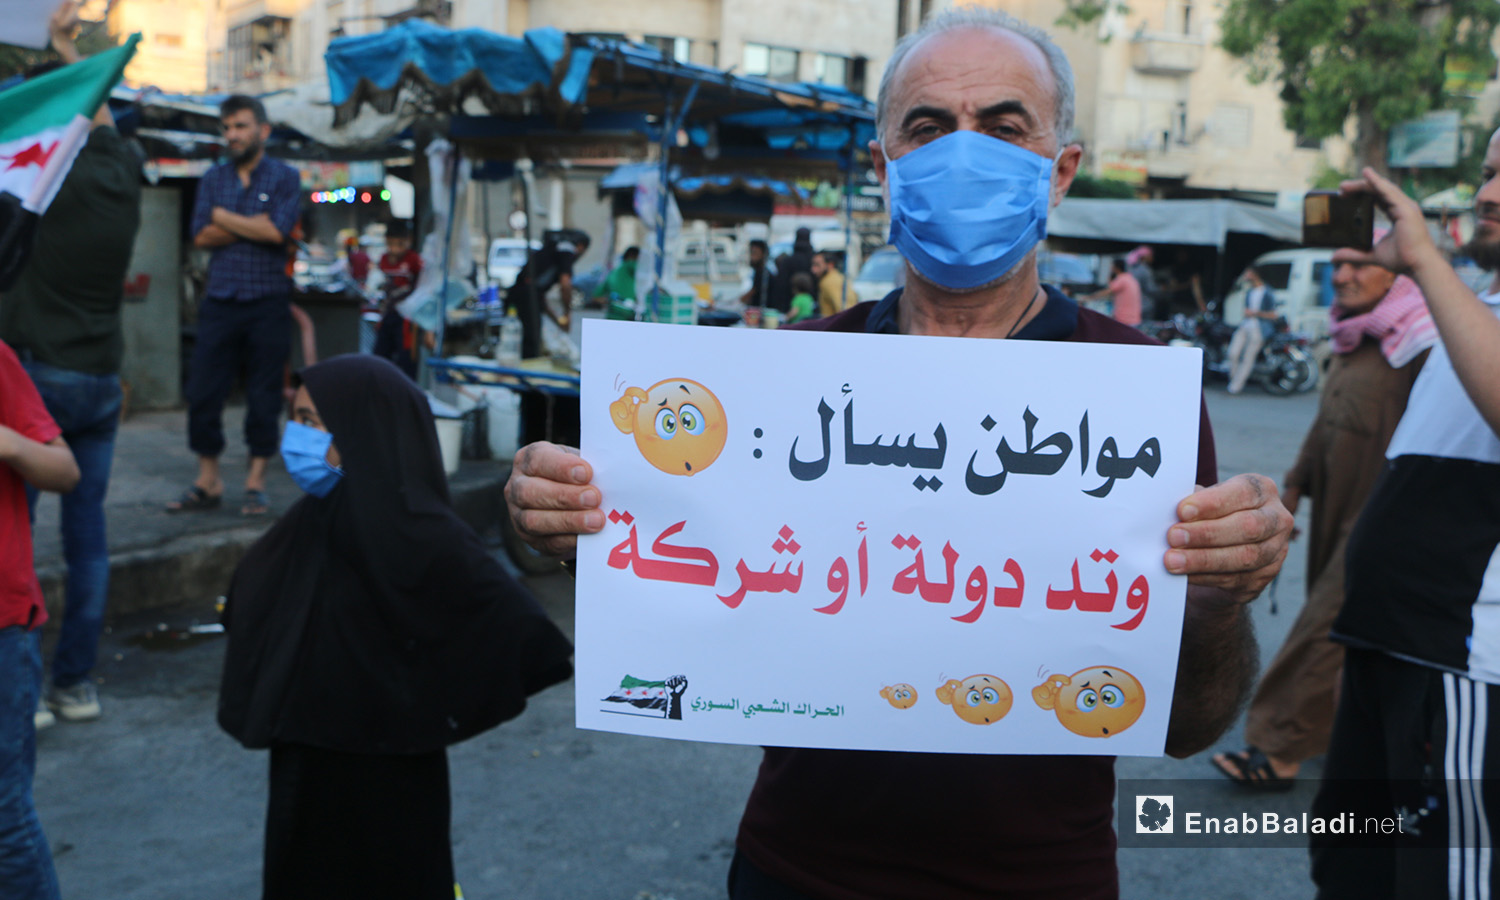 وقفة في مدينة إدلب احتجاجًا على ارتفاع أسعار المحروقات وغلاء المعيشة - 4 آب 2020 (عنب بلدي/أنس الخولي)